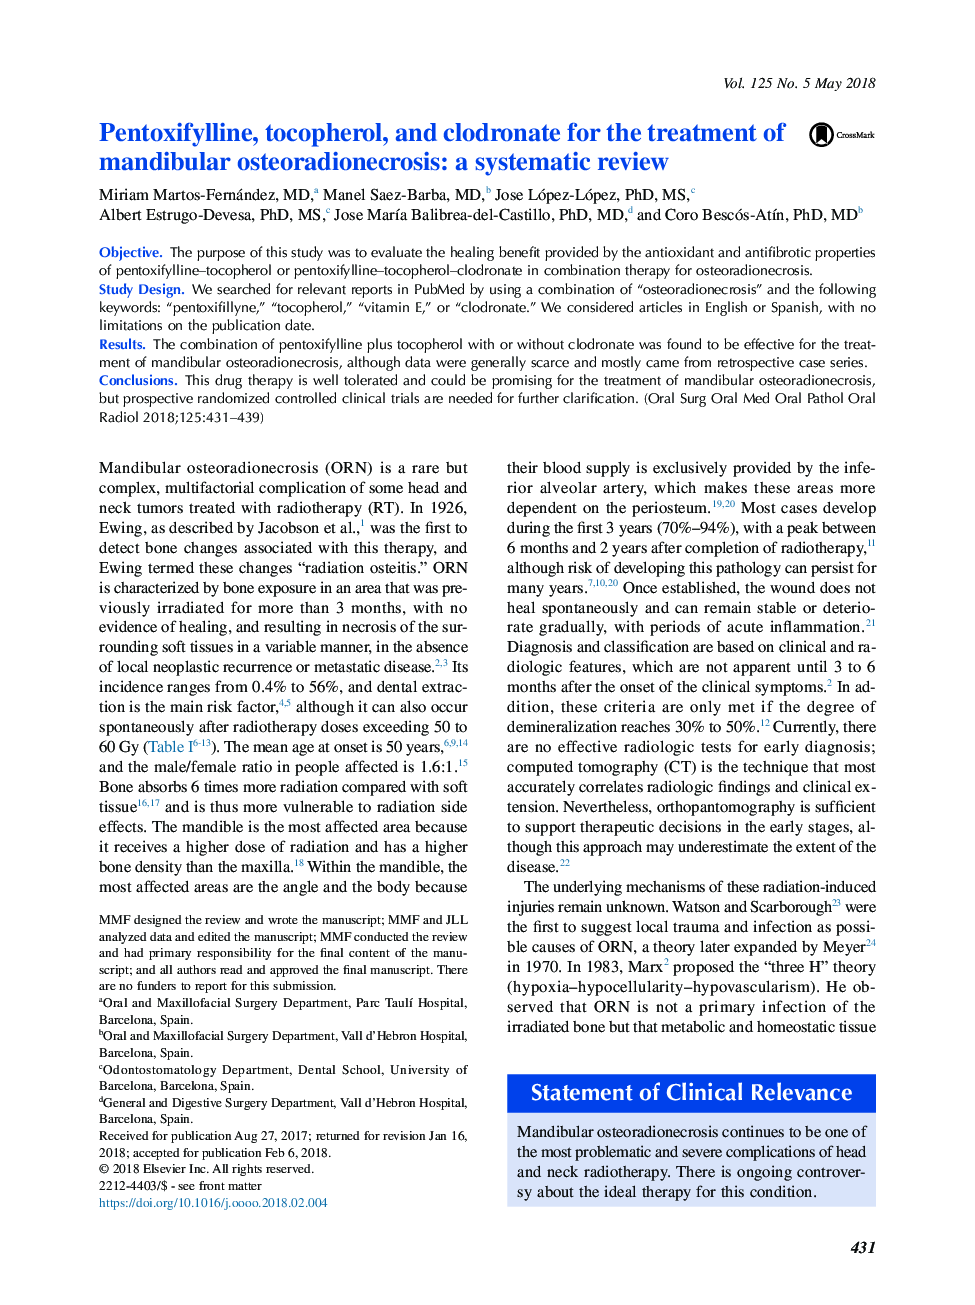 پنتوکسی فیلین، توکوفرول و کلدرونیت برای درمان استئوآرتریت زخم مندیبول: بررسی سیستماتیک 